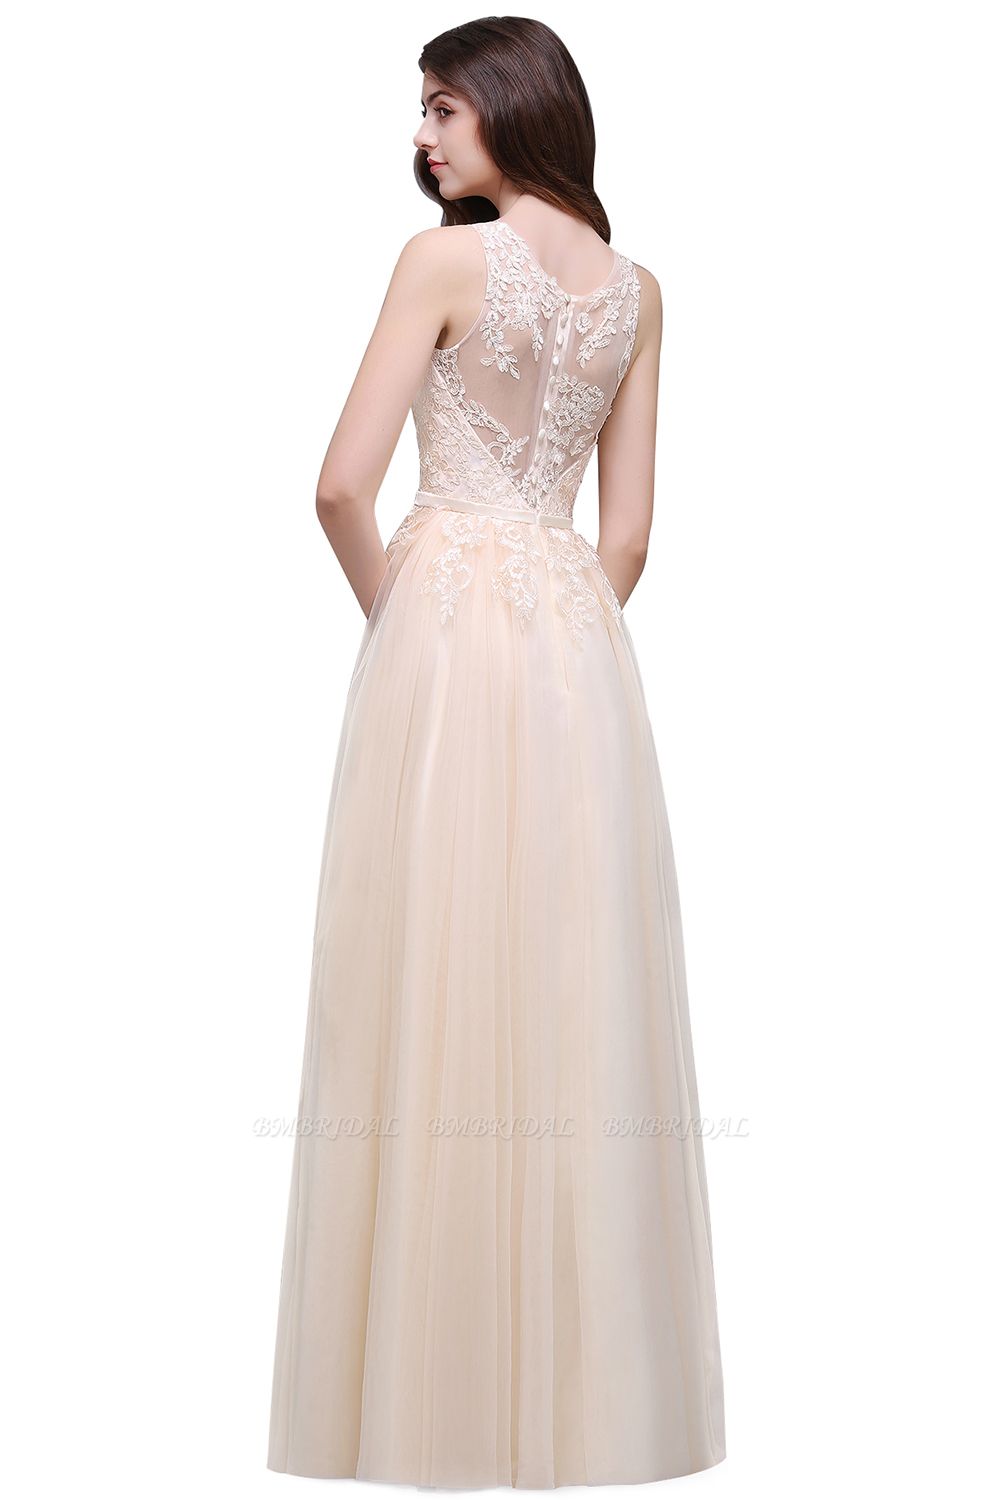 Lace Sleeveless Long Tulle Ivory Wedding Dress